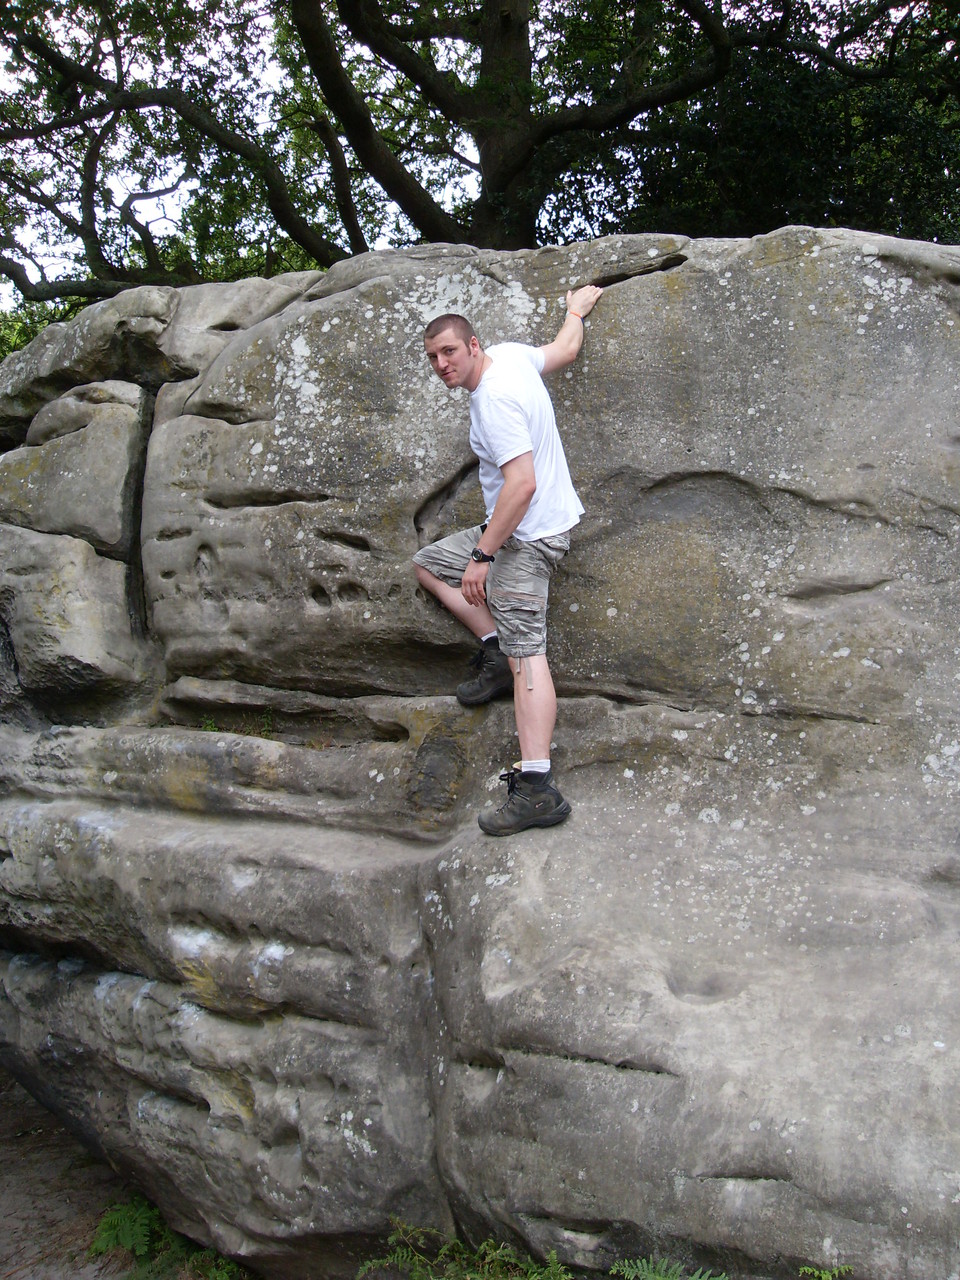 Steve climbing a lovely rock